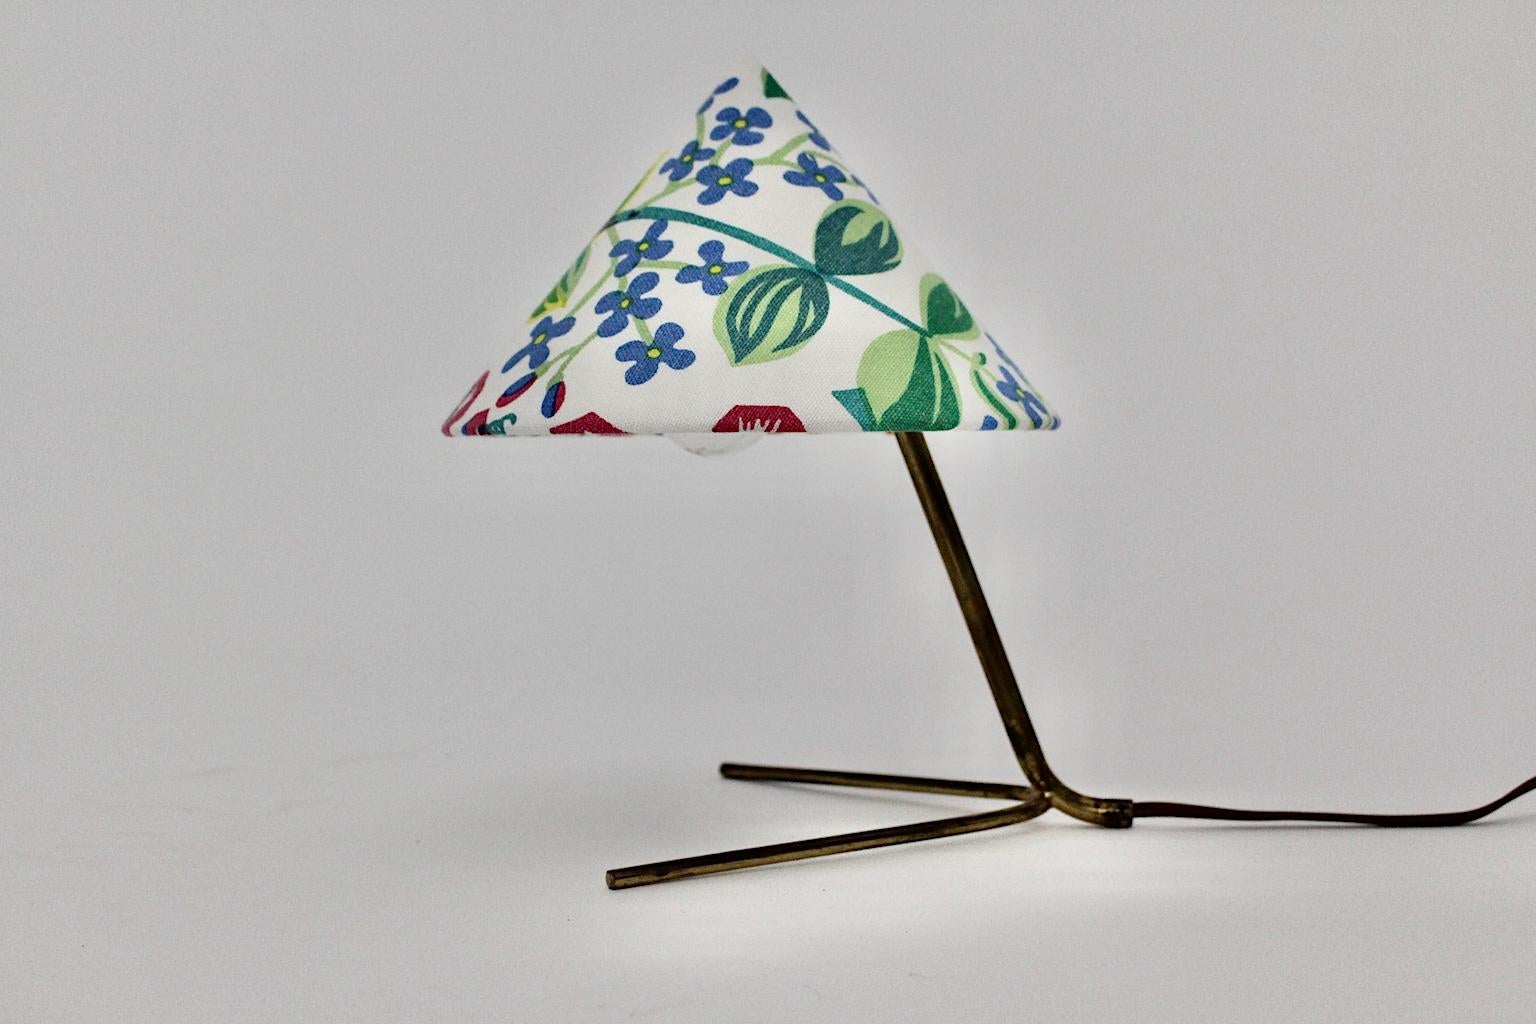 Mid-Century Modern Tischlampe aus Messing, entworfen und hergestellt von Kalmar, 1950er Jahre, Österreich. Während der Sockel und der signifikante Spreizfuß aus Messingrohr gefertigt wurden und Altersspuren aufweisen, ist der erneuerte Lampenschirm